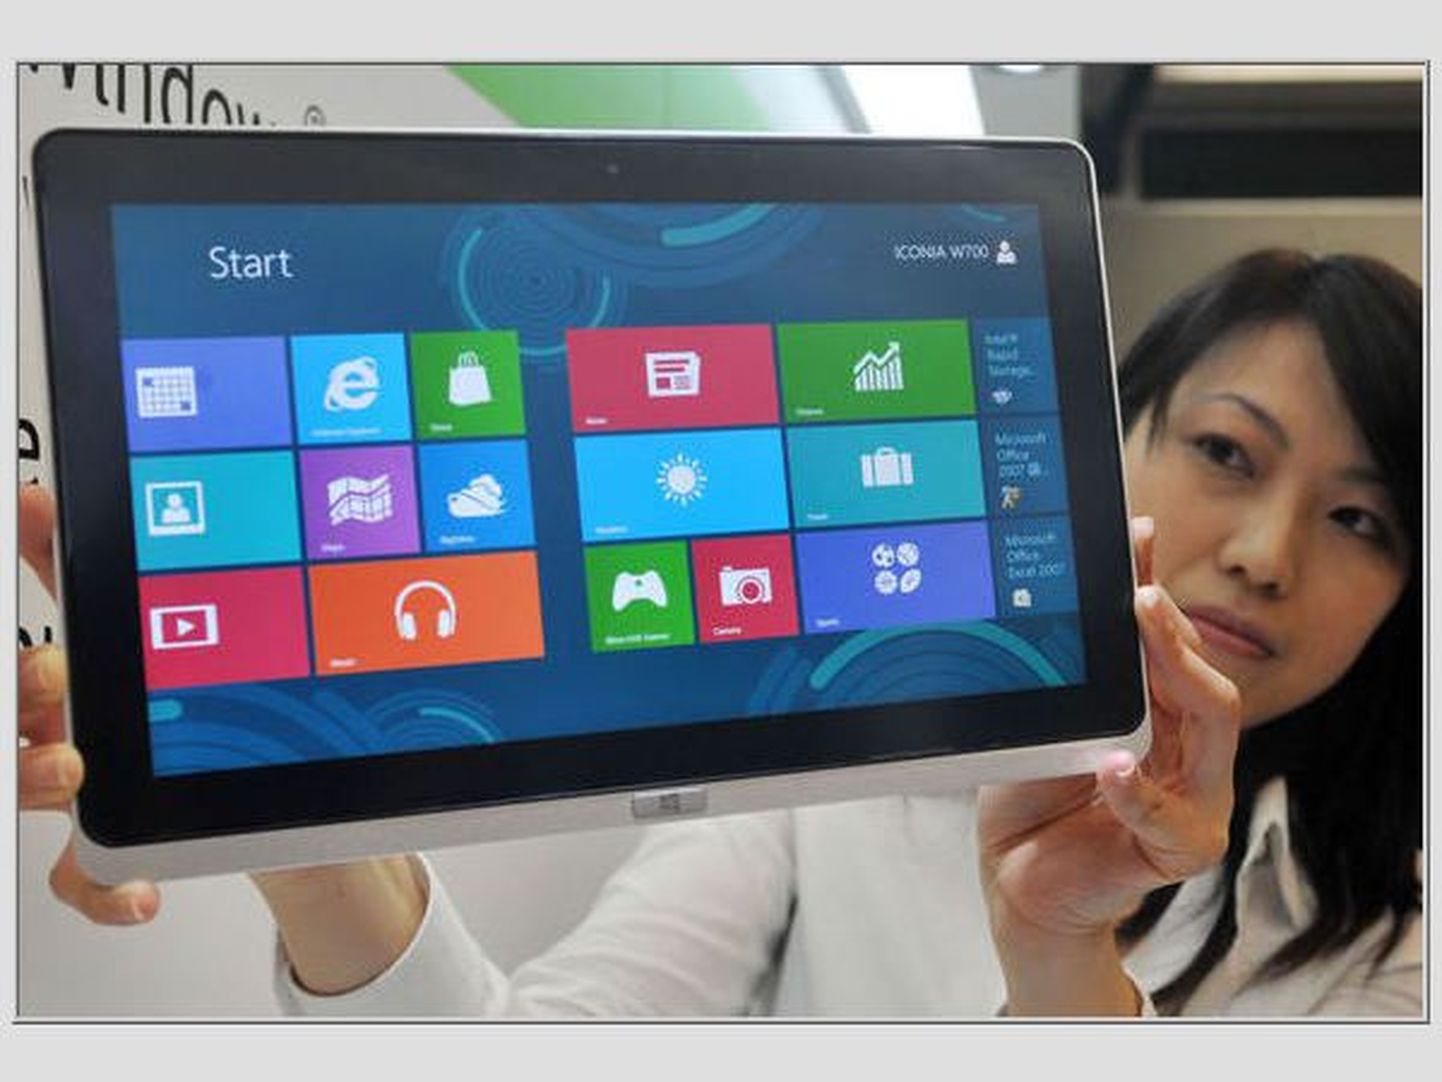 Windows 8-ga varustatud tahvelarvuti.